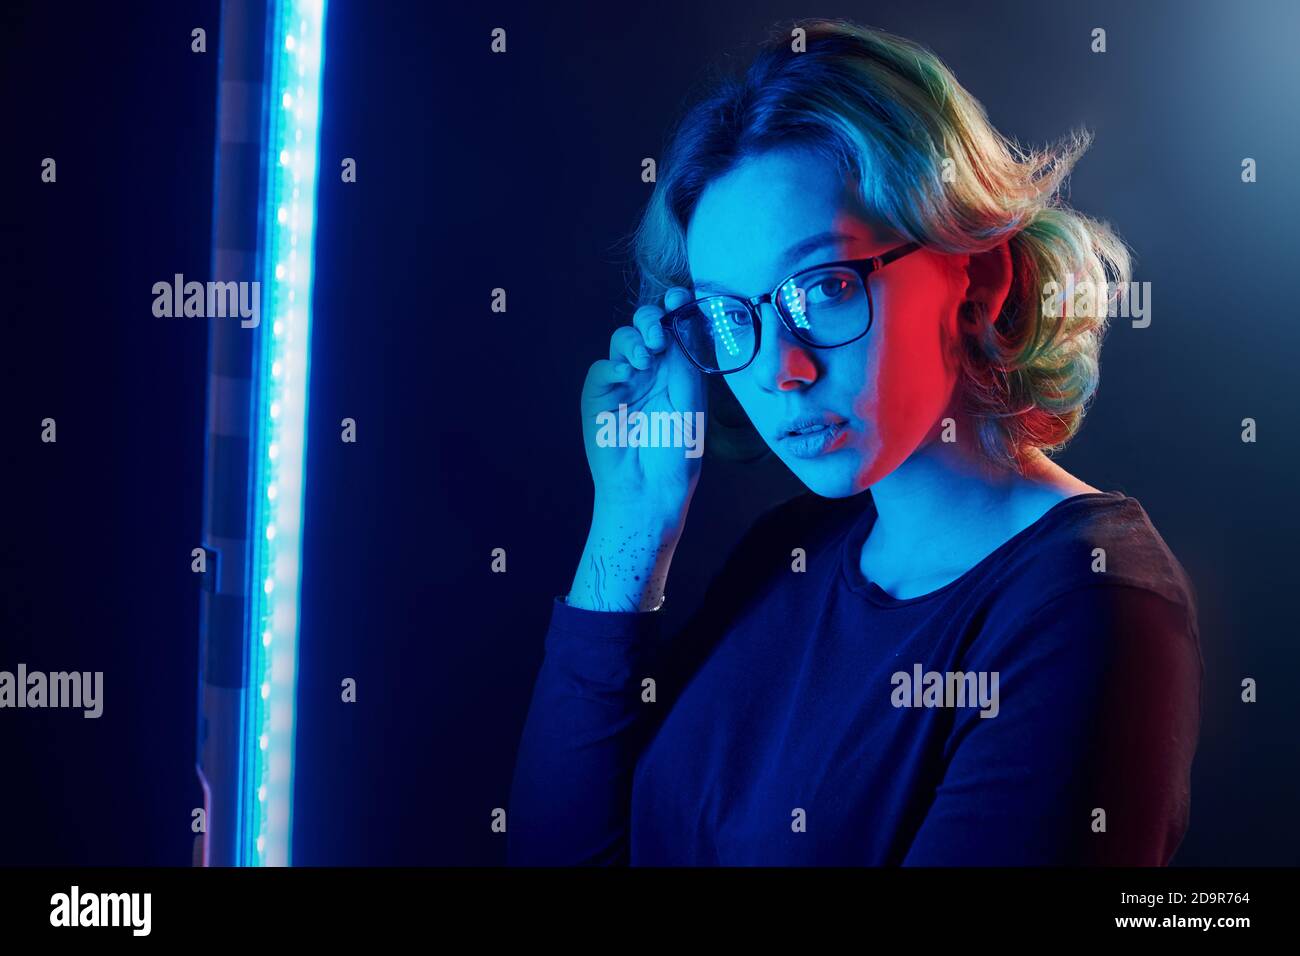 Ritratto di giovane ragazza alternativa in occhiali con capelli verdi in luce al neon rosso e blu in studio Foto Stock